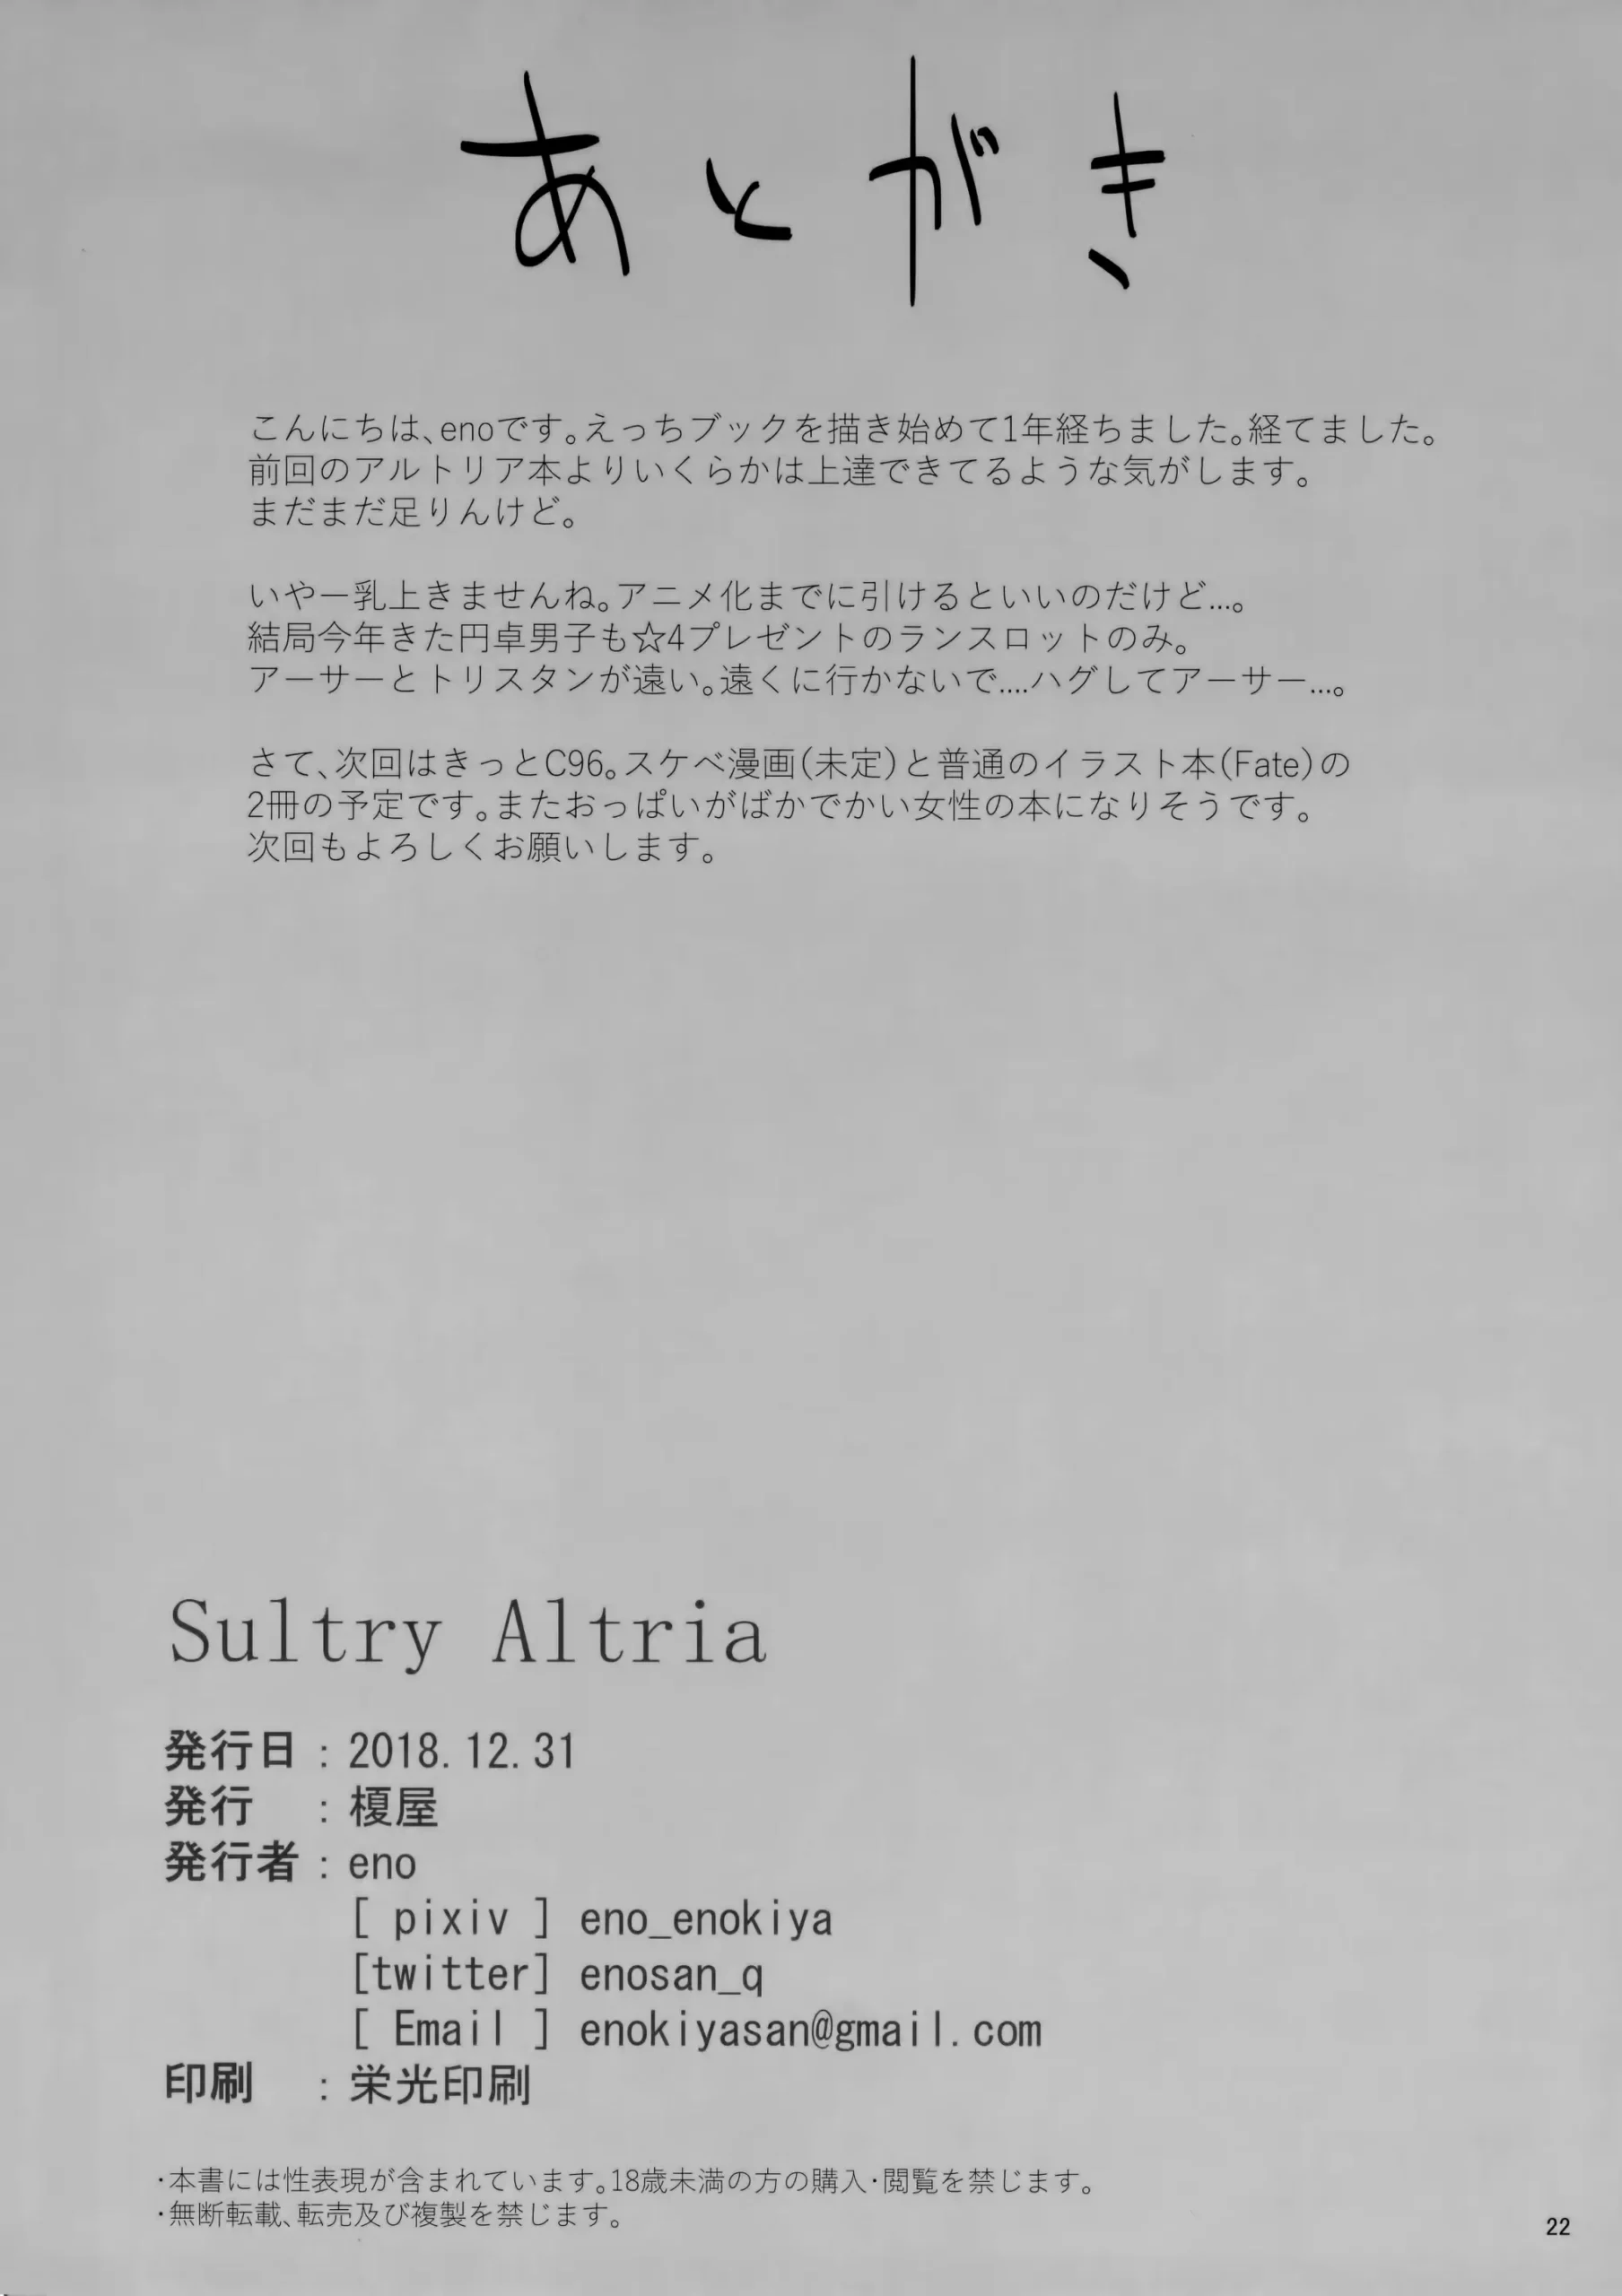 Sultry Altria - Foto 22